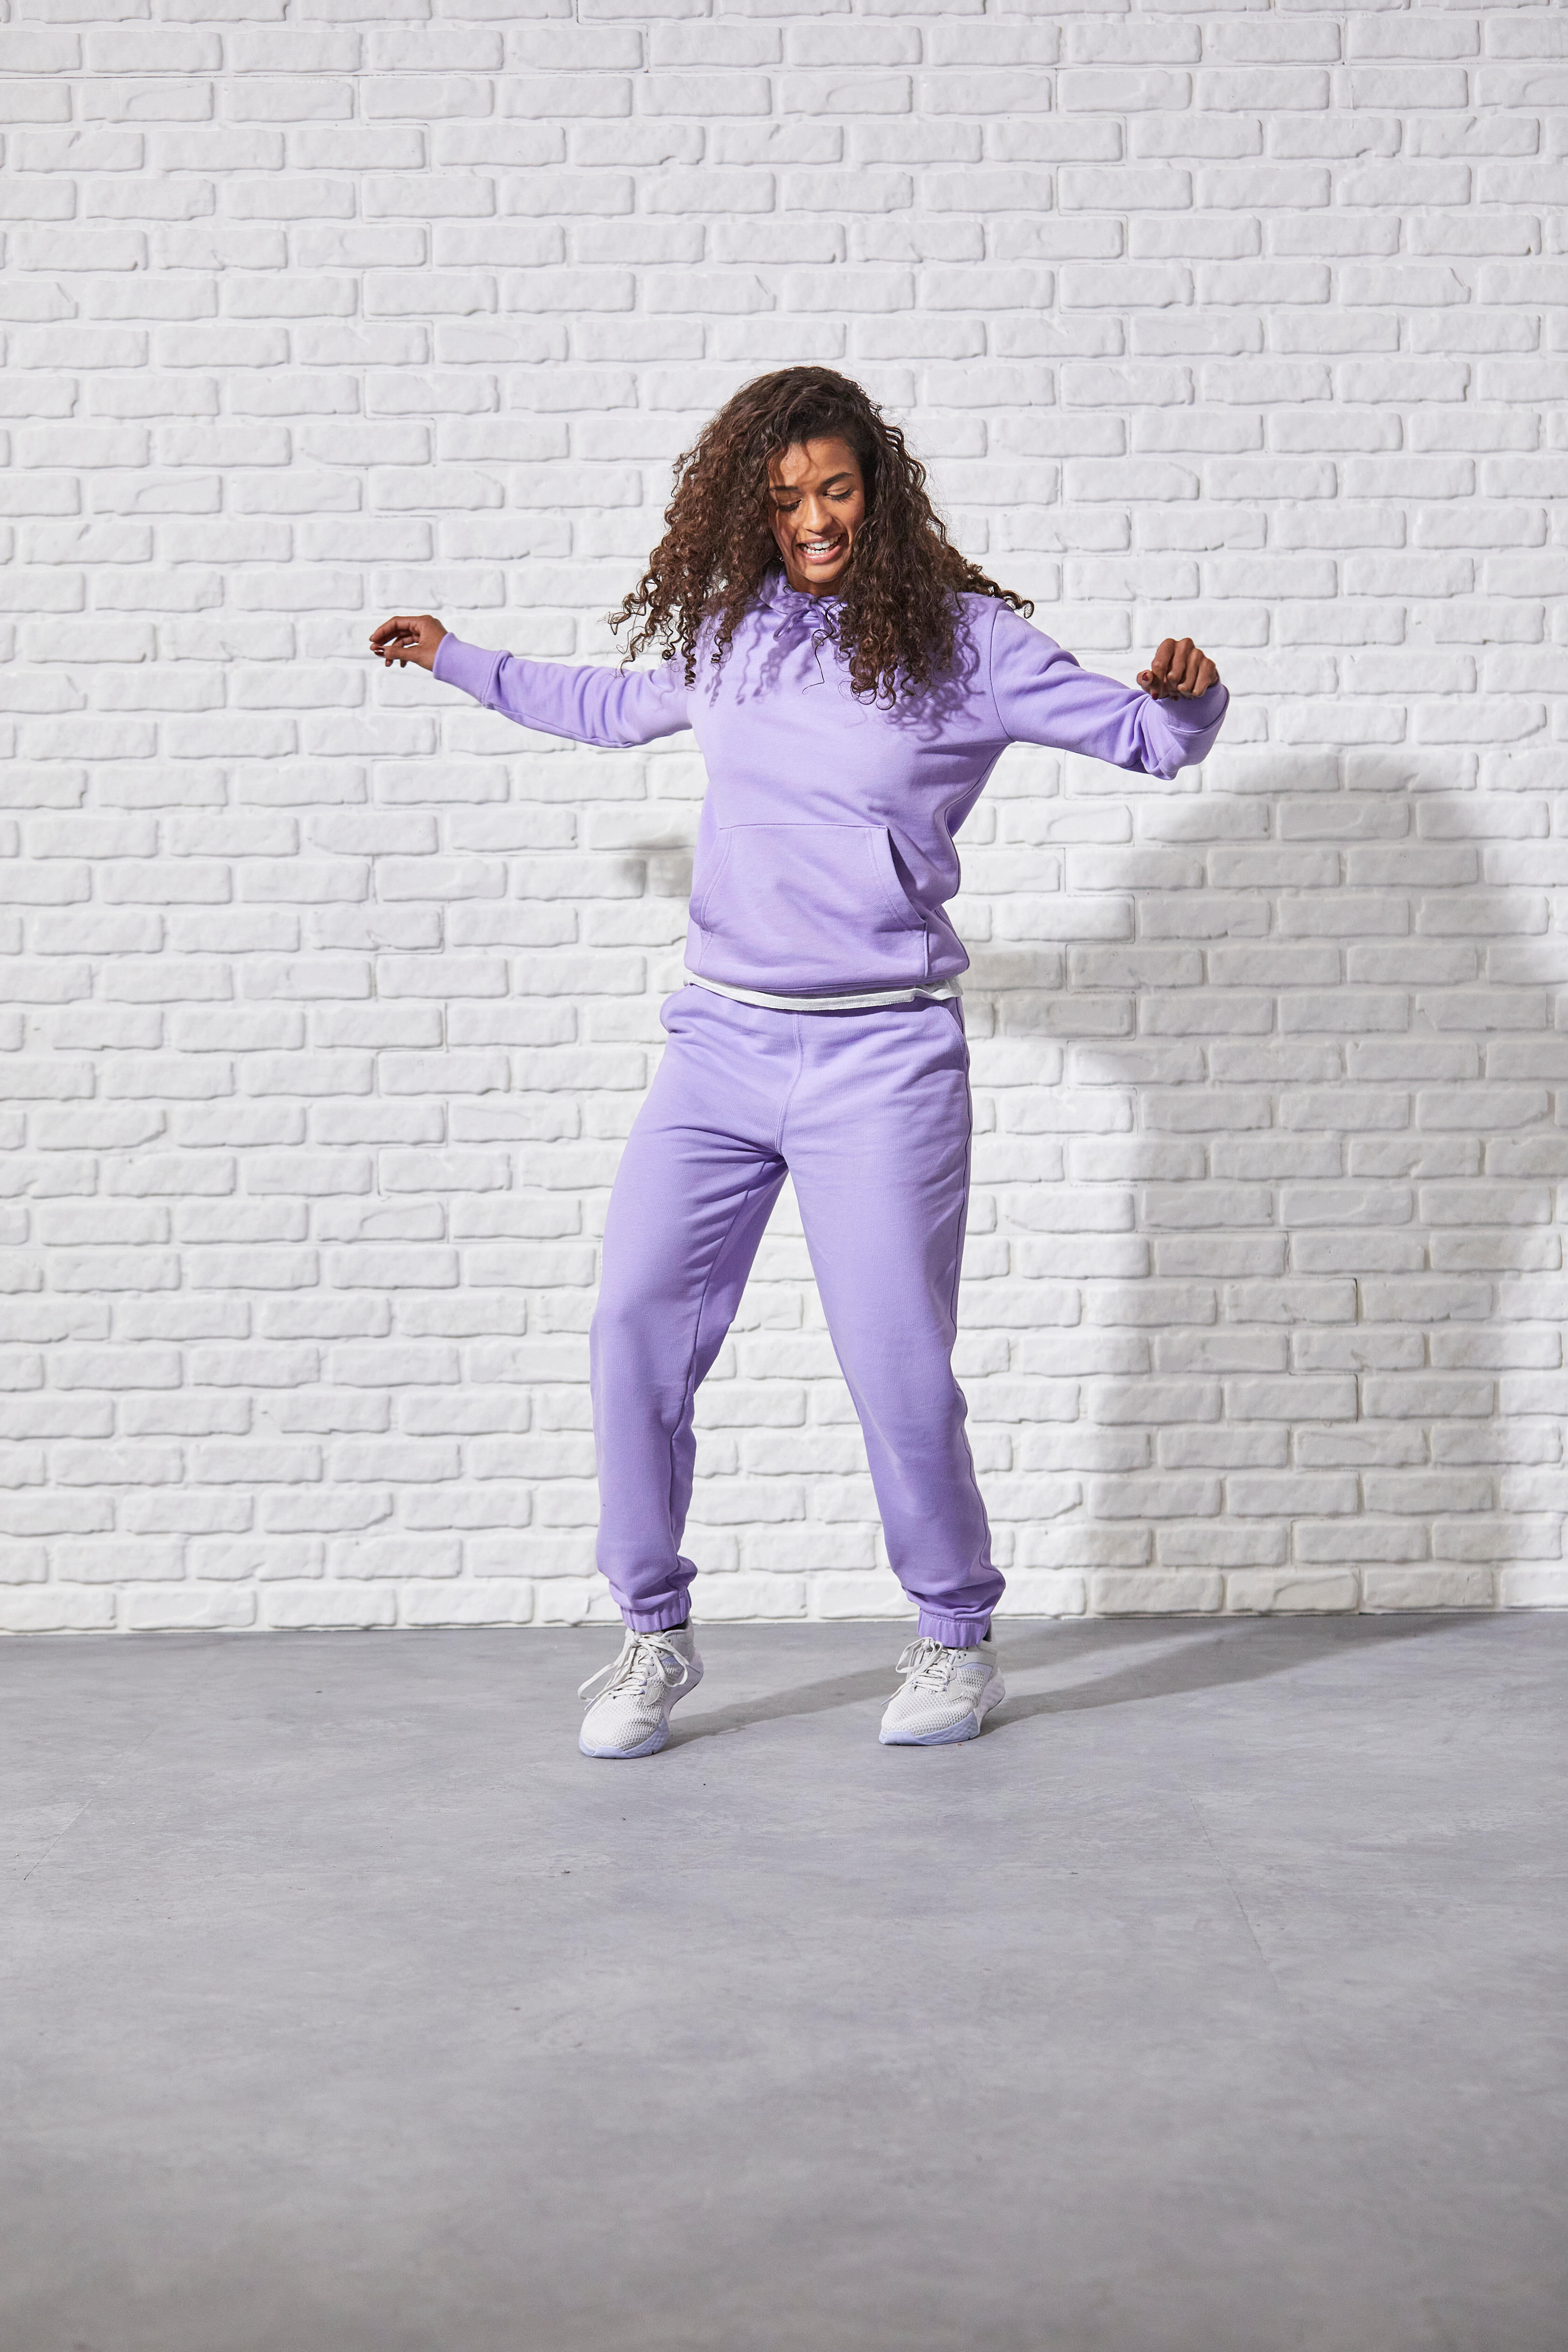 Pantalon de sport femme – Essentials 500 violet - Violet neon - Domyos -  Décathlon